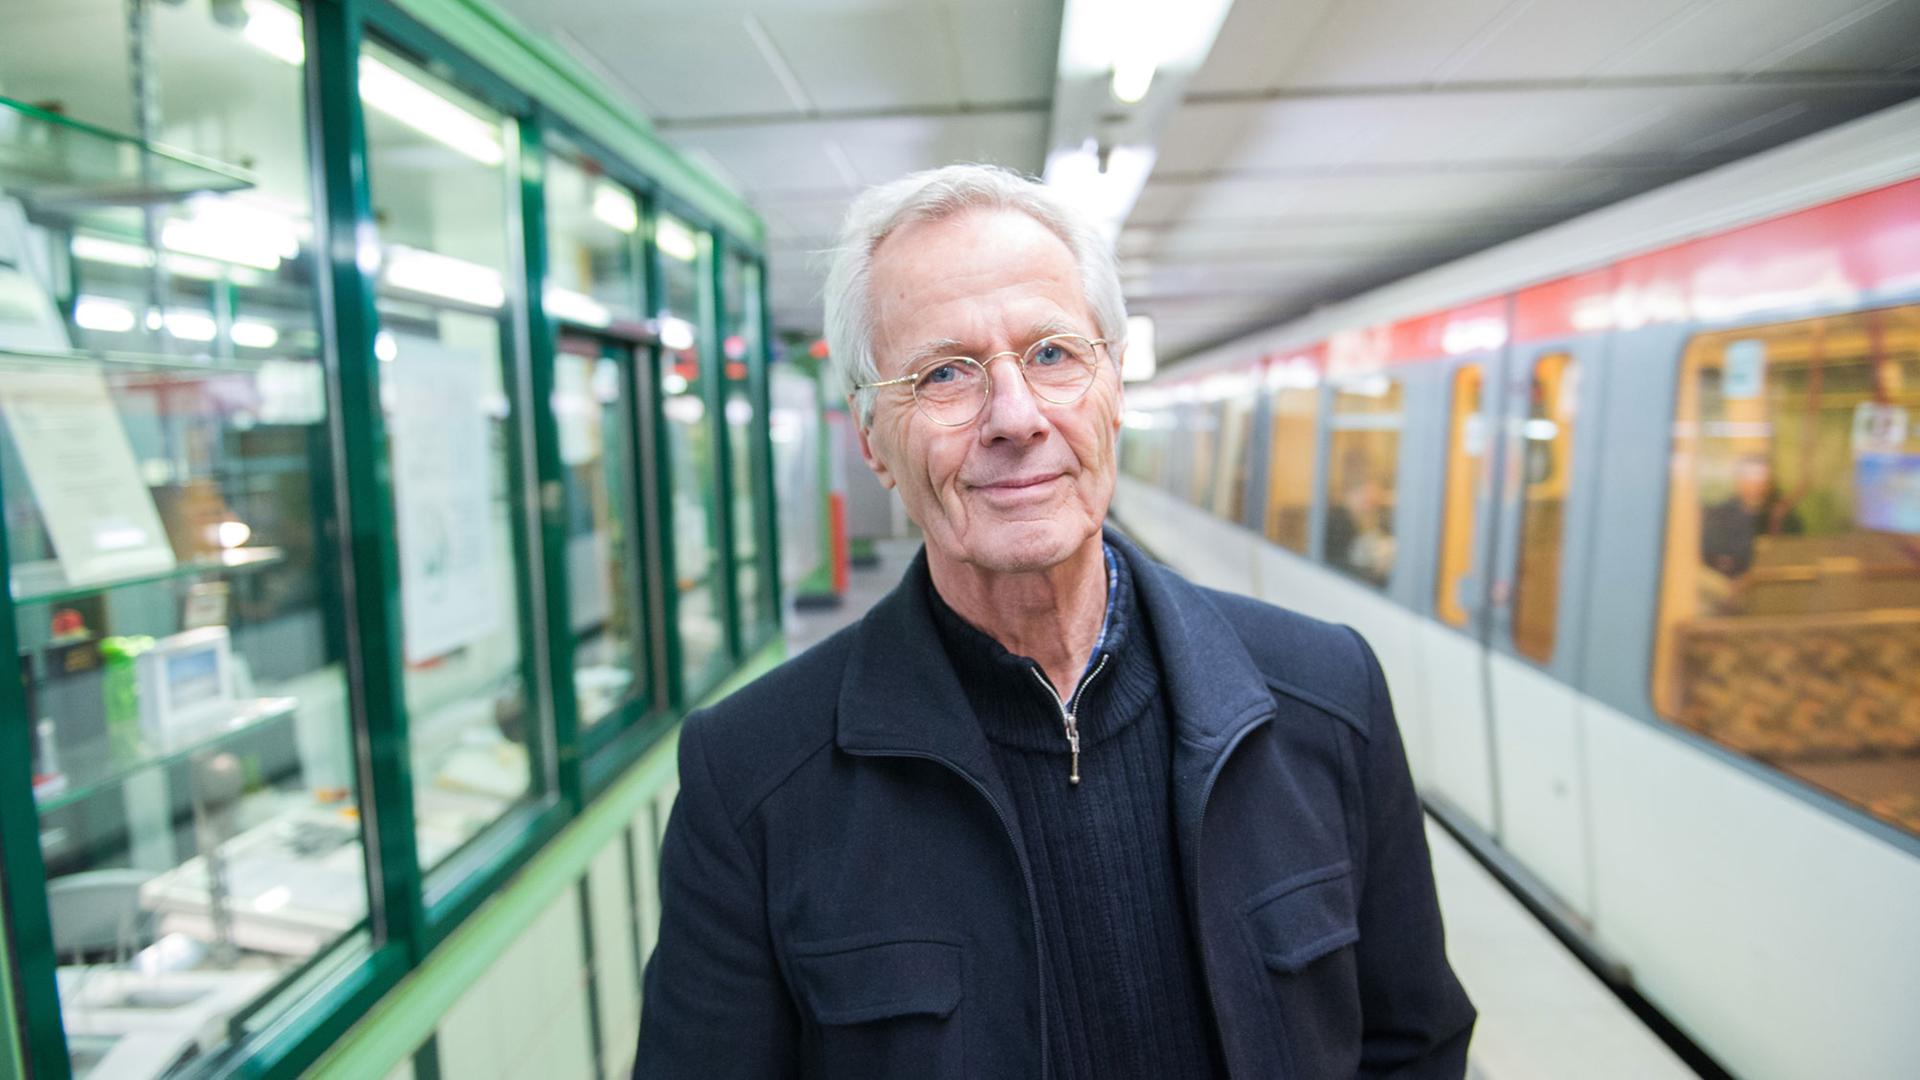 Christoph Busch im Hamburger Untergrund: Seit Monaten hört er er anderen Menschen zu